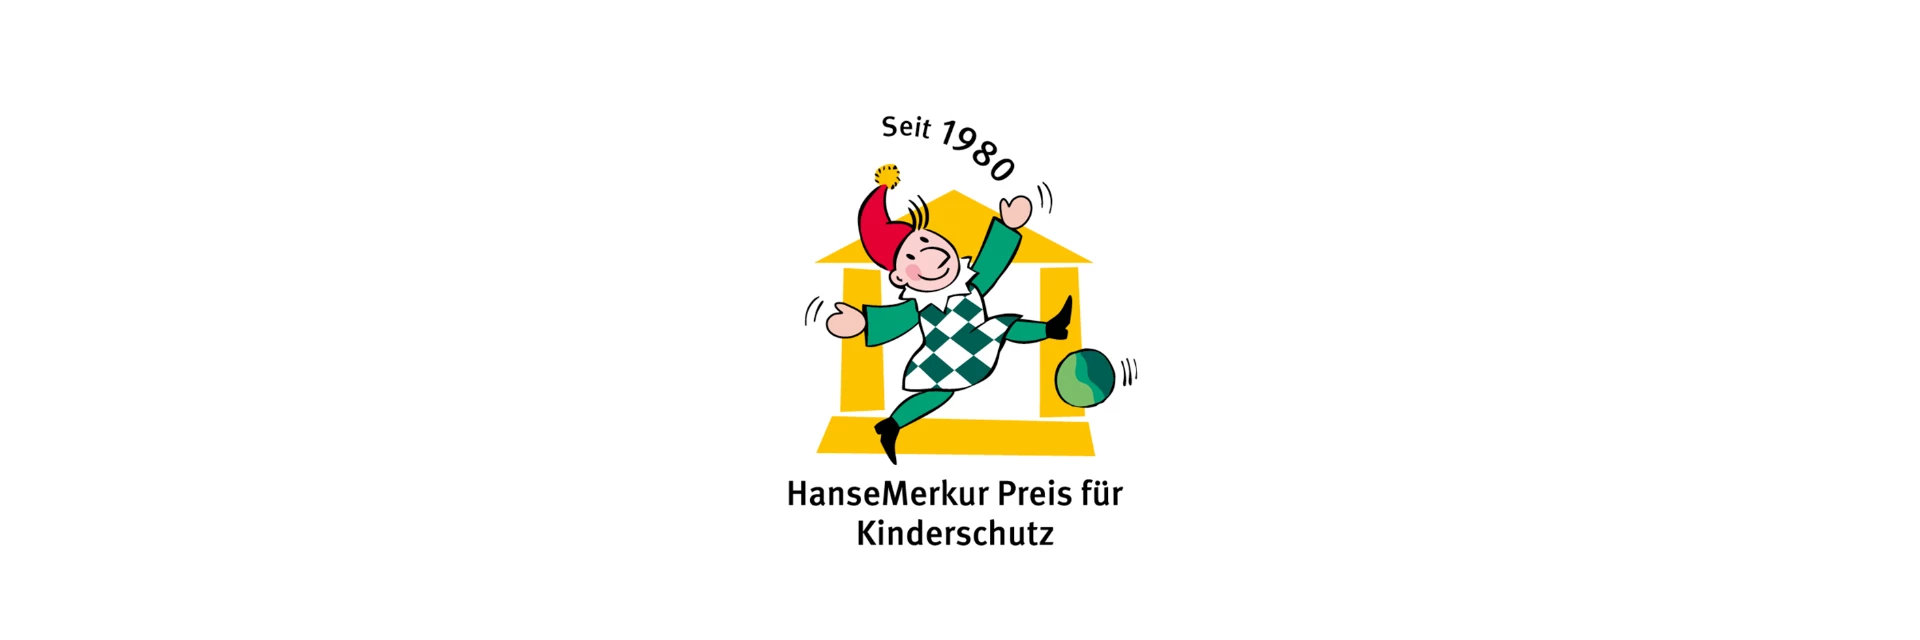 HanseMerkur Preis für Kinderschutz